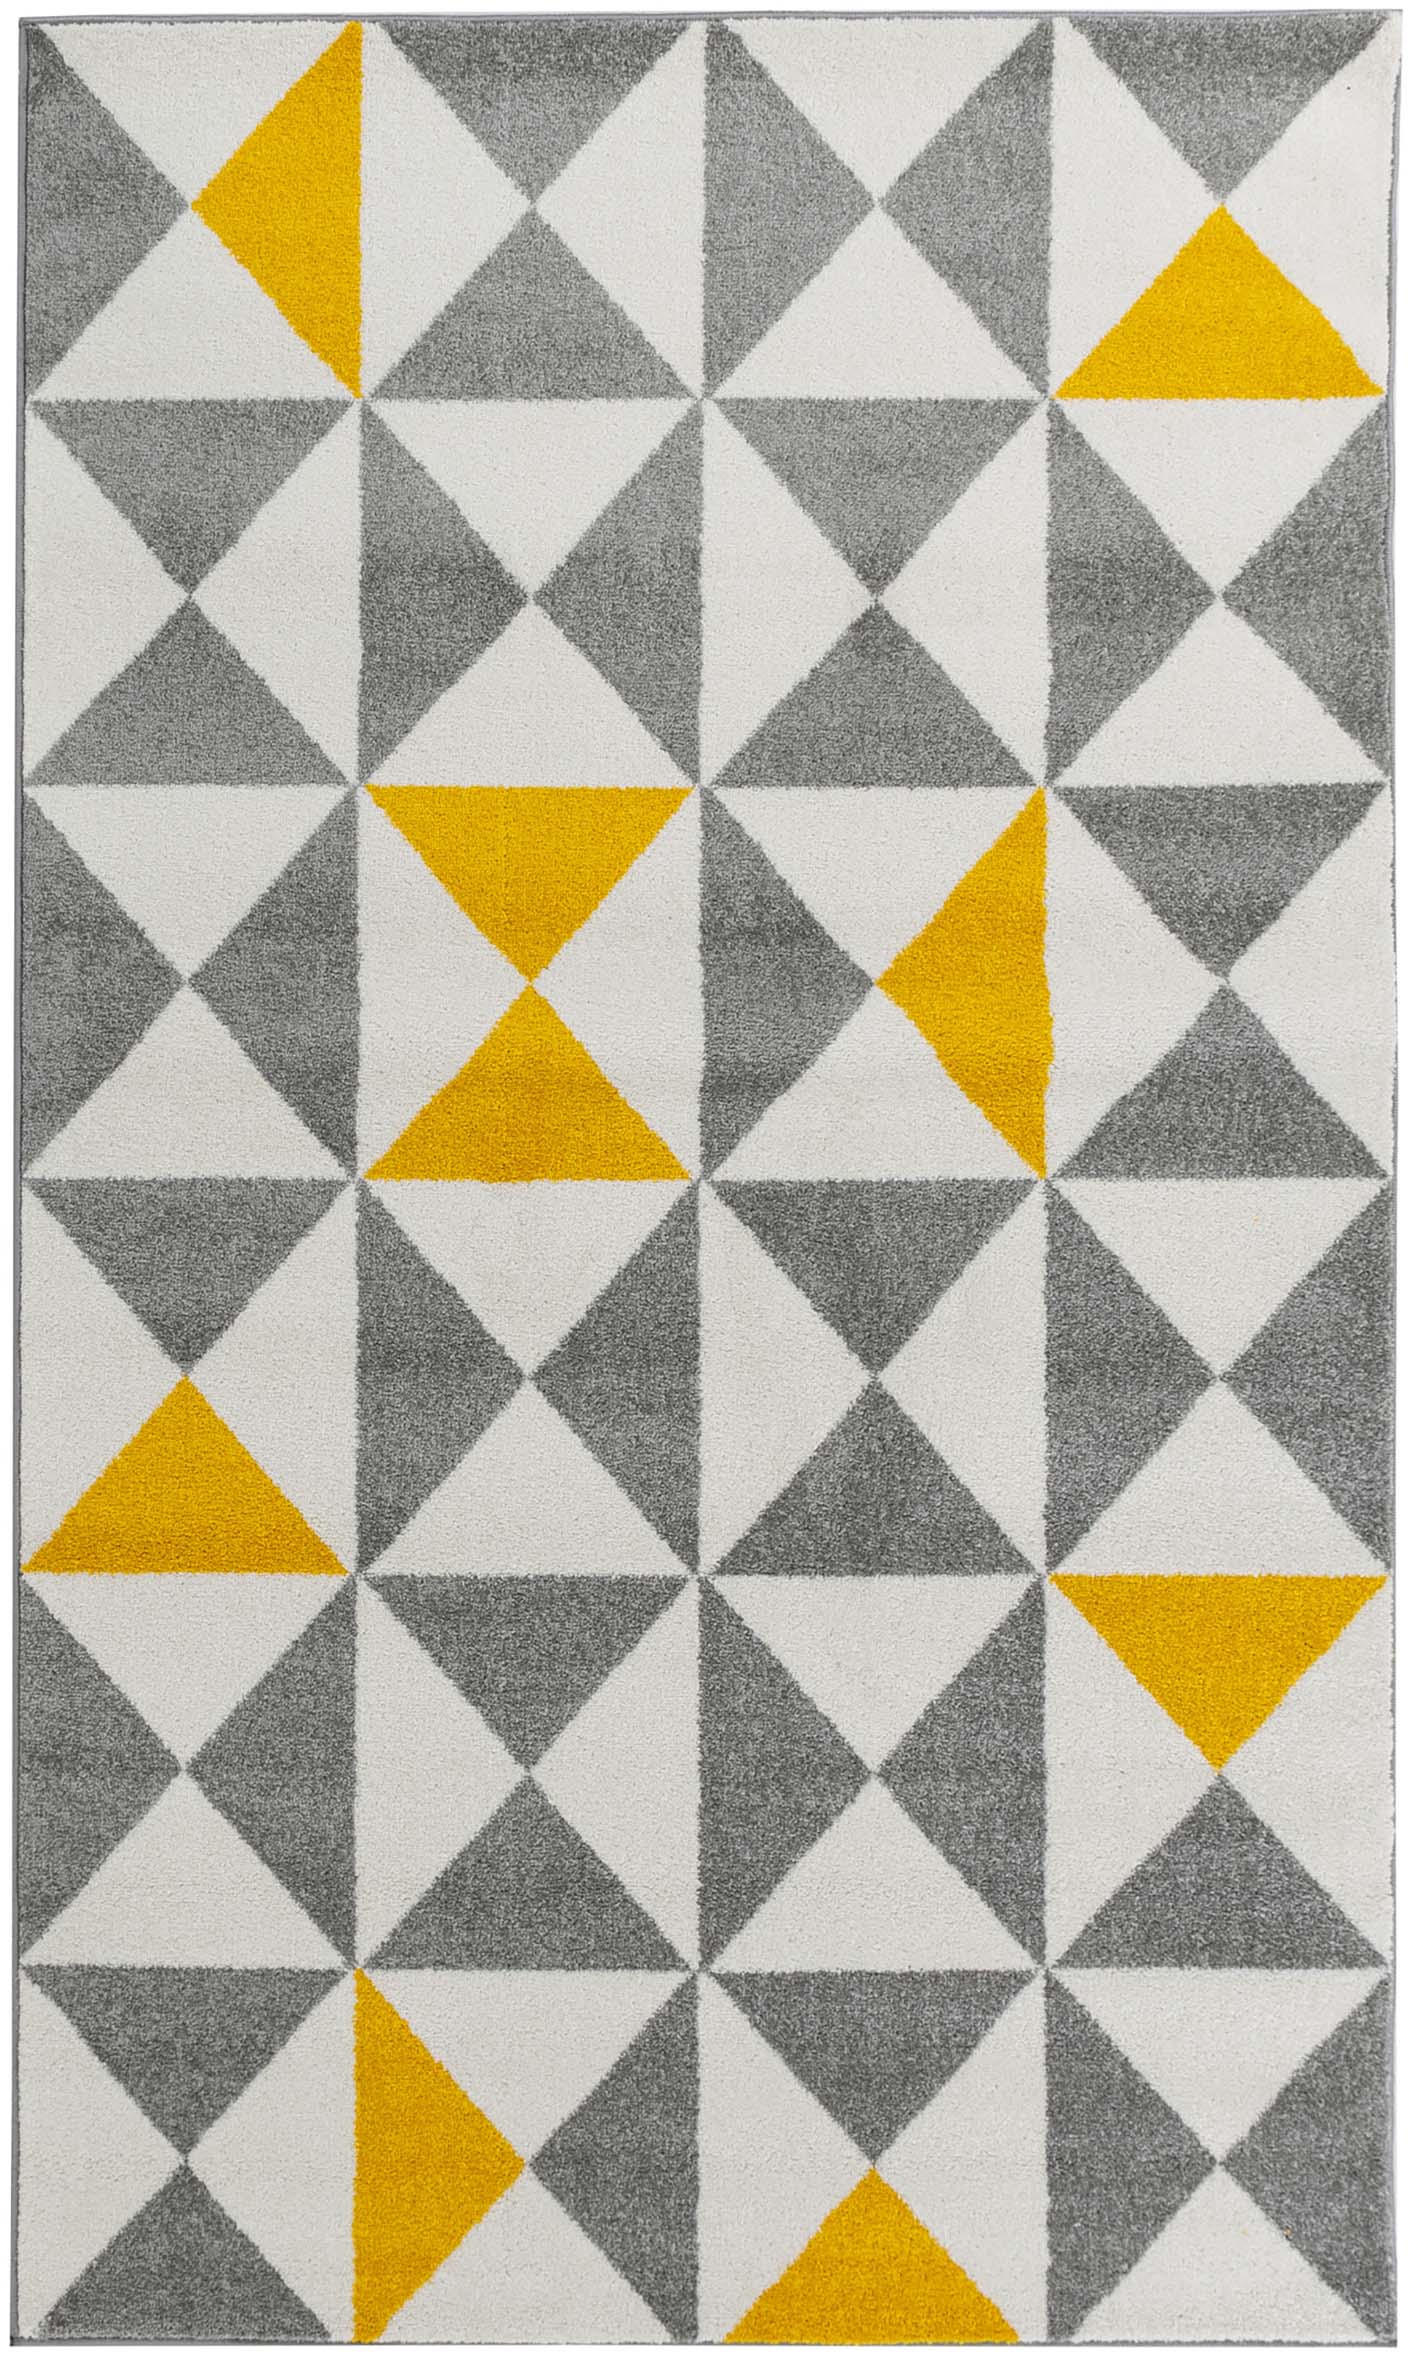 FORSA - Tapis géométrique jaune 120x160cm